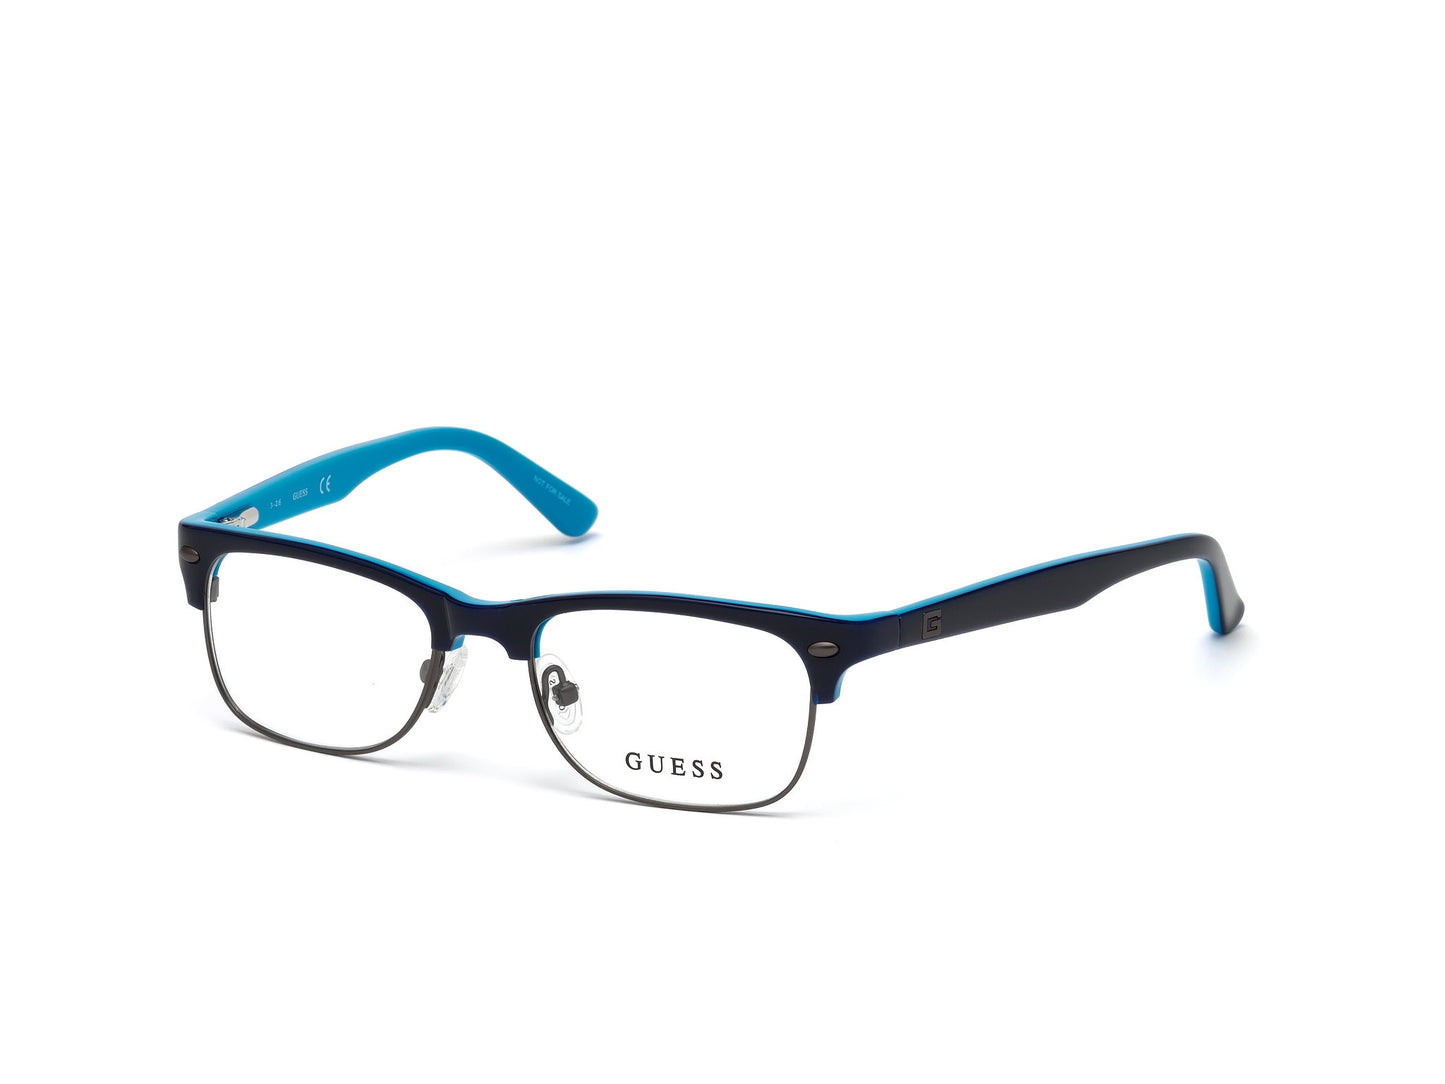 Guess GU9174 Browline Eyeglasses 090-090 - Shiny Blue